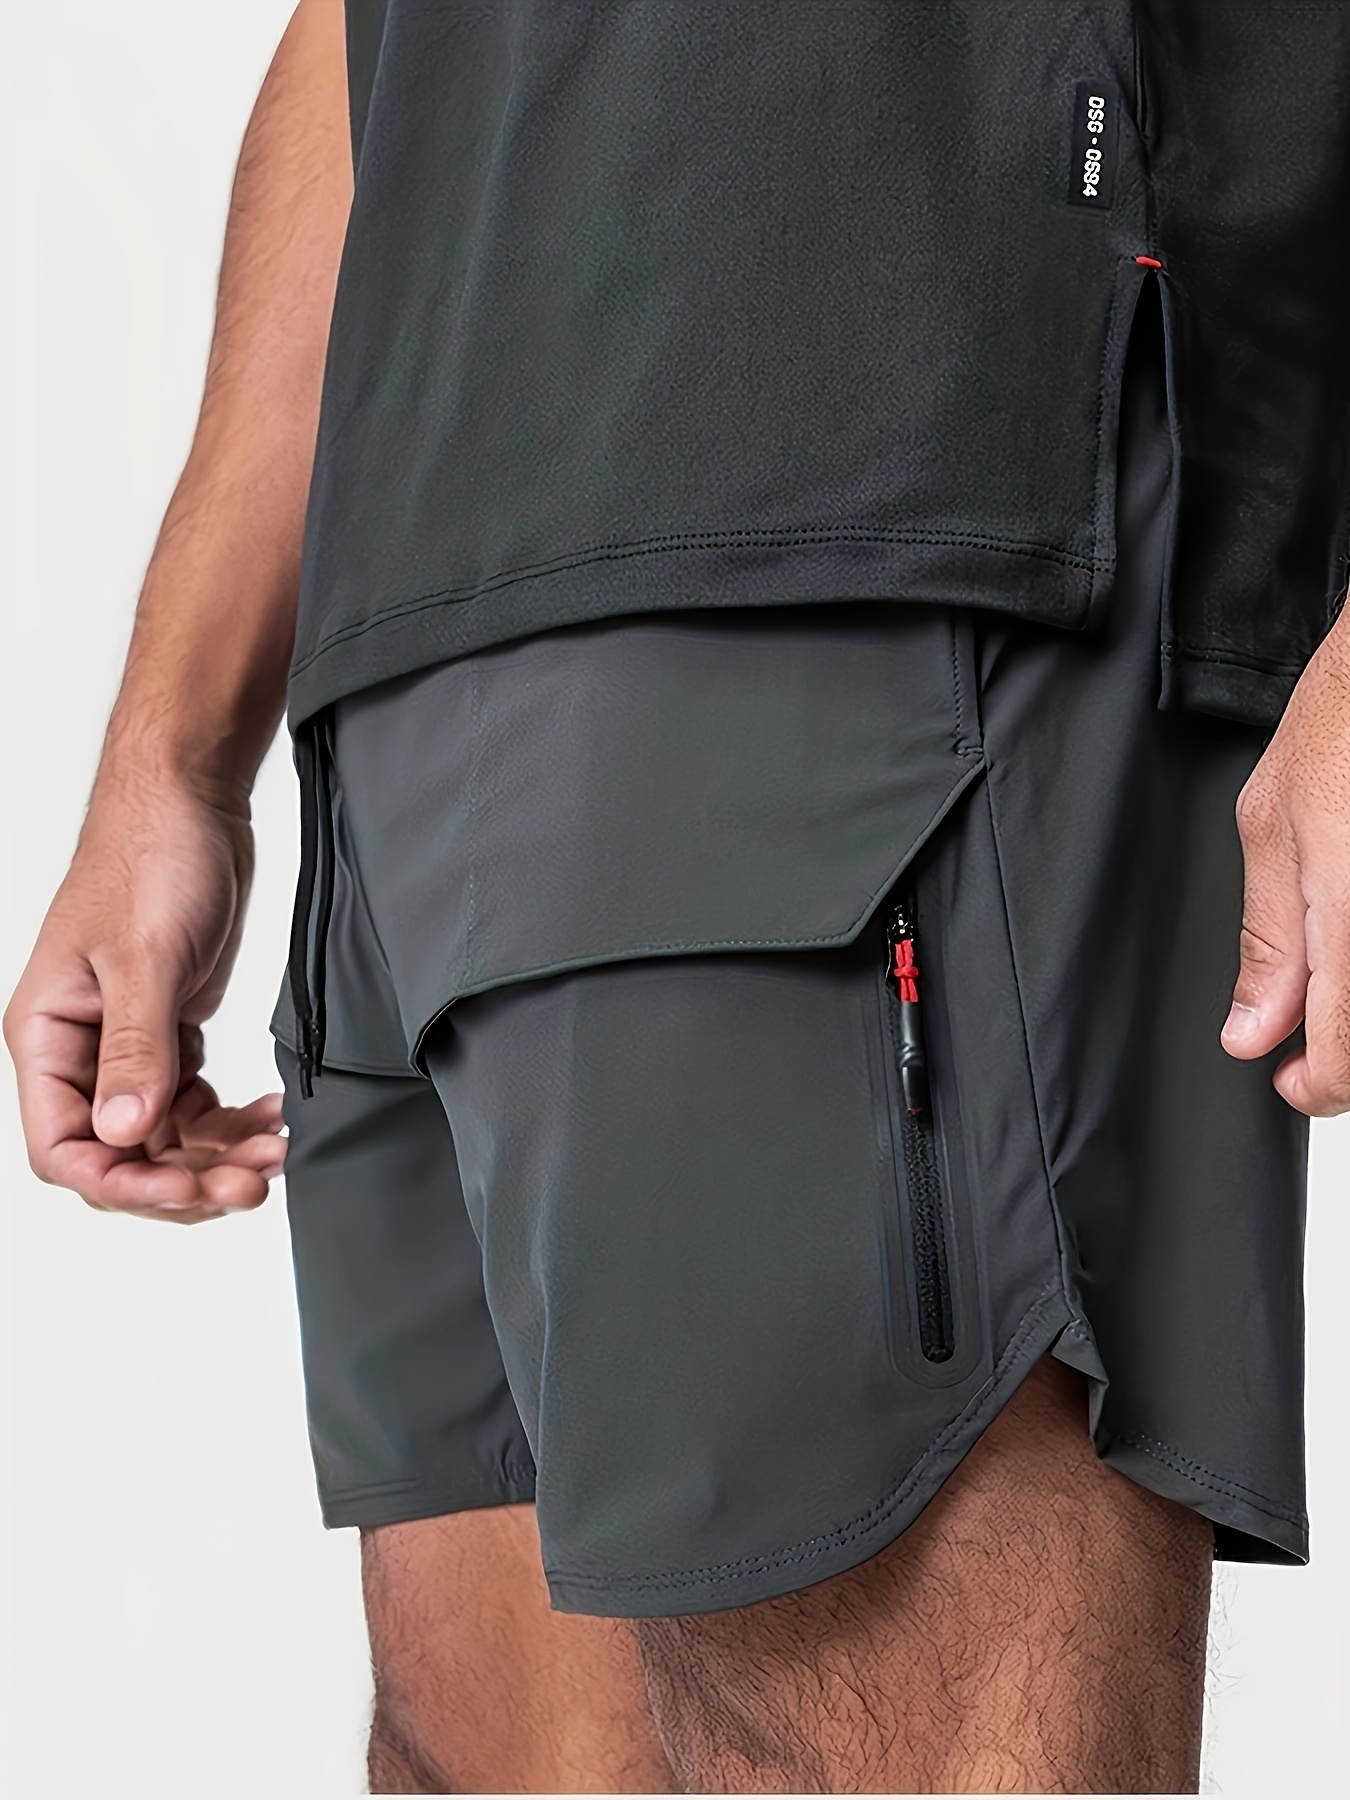 Pantalones Cortos/shorts Deportivos Estilo Americano - Temu Chile